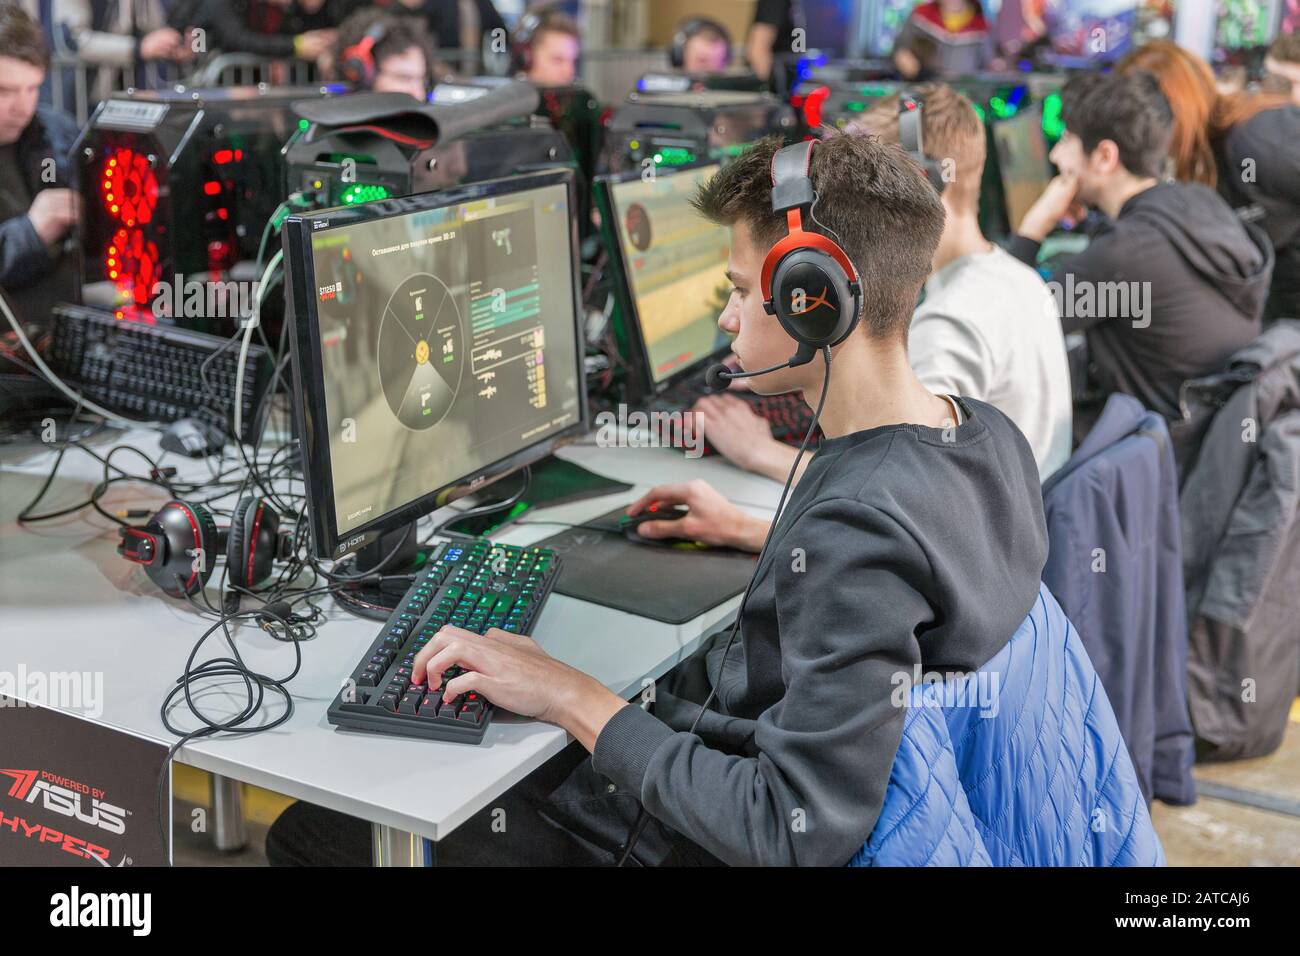 Kiew, UKRAINE - 06. APRIL 2019: Leute, die Computerspiele am Stand der Republik Der Gamer spielen, eine Marke, die von Asus seit 2006 verwendet wird und eine Reihe von PCs umfasst Stockfoto